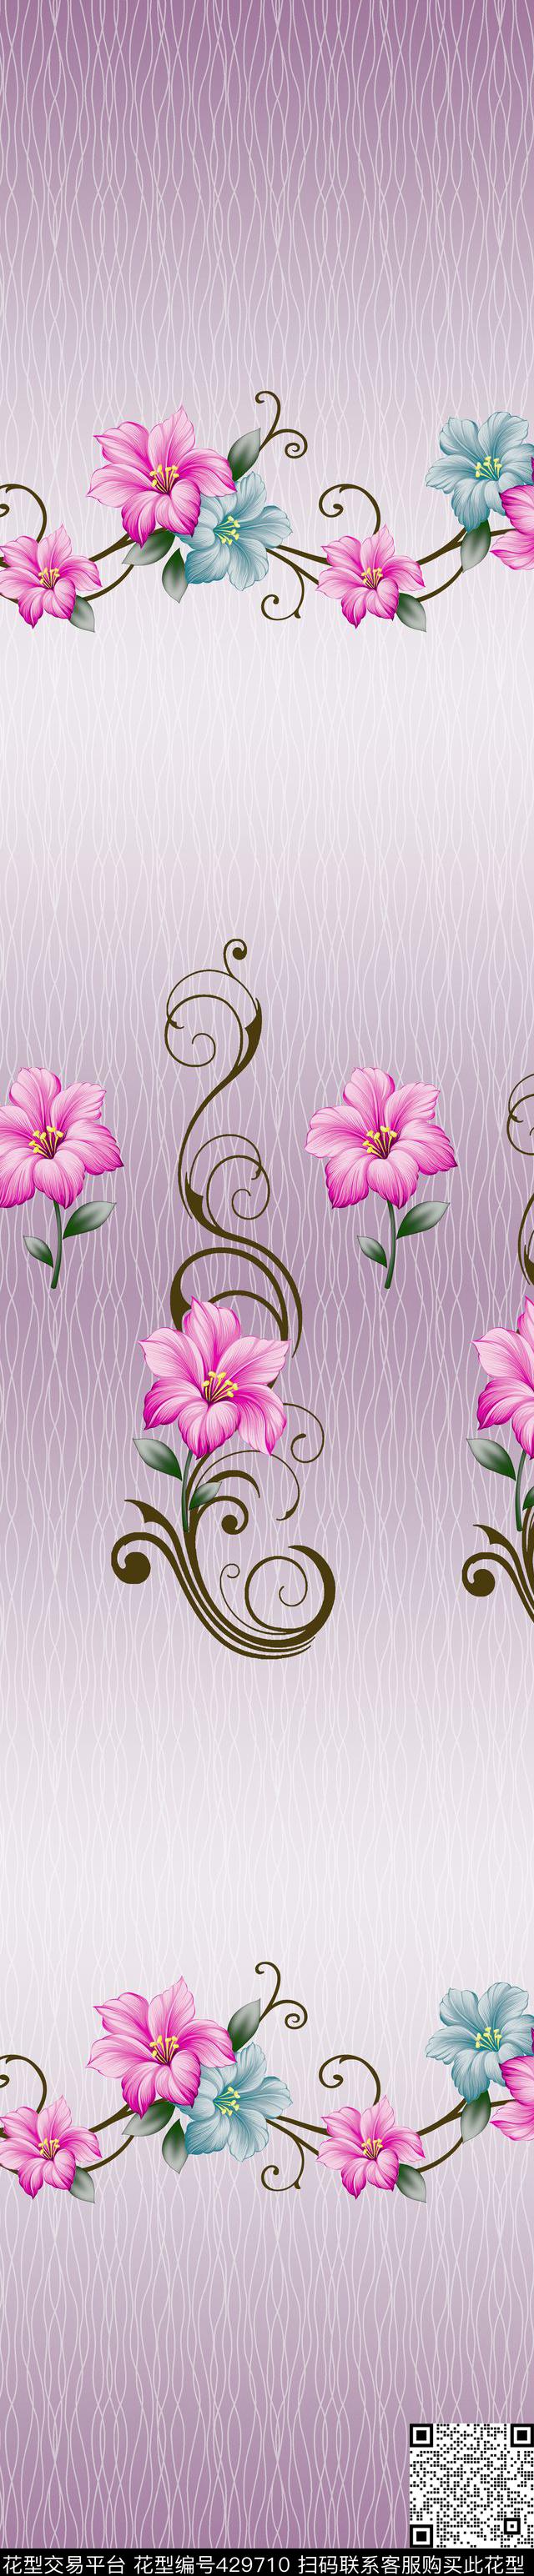 时尚窗帘花型  家纺花型  流行窗帘花型 - 429710 - 时尚窗帘花型  家纺花型 - 传统印花花型 － 床品花型设计 － 瓦栏